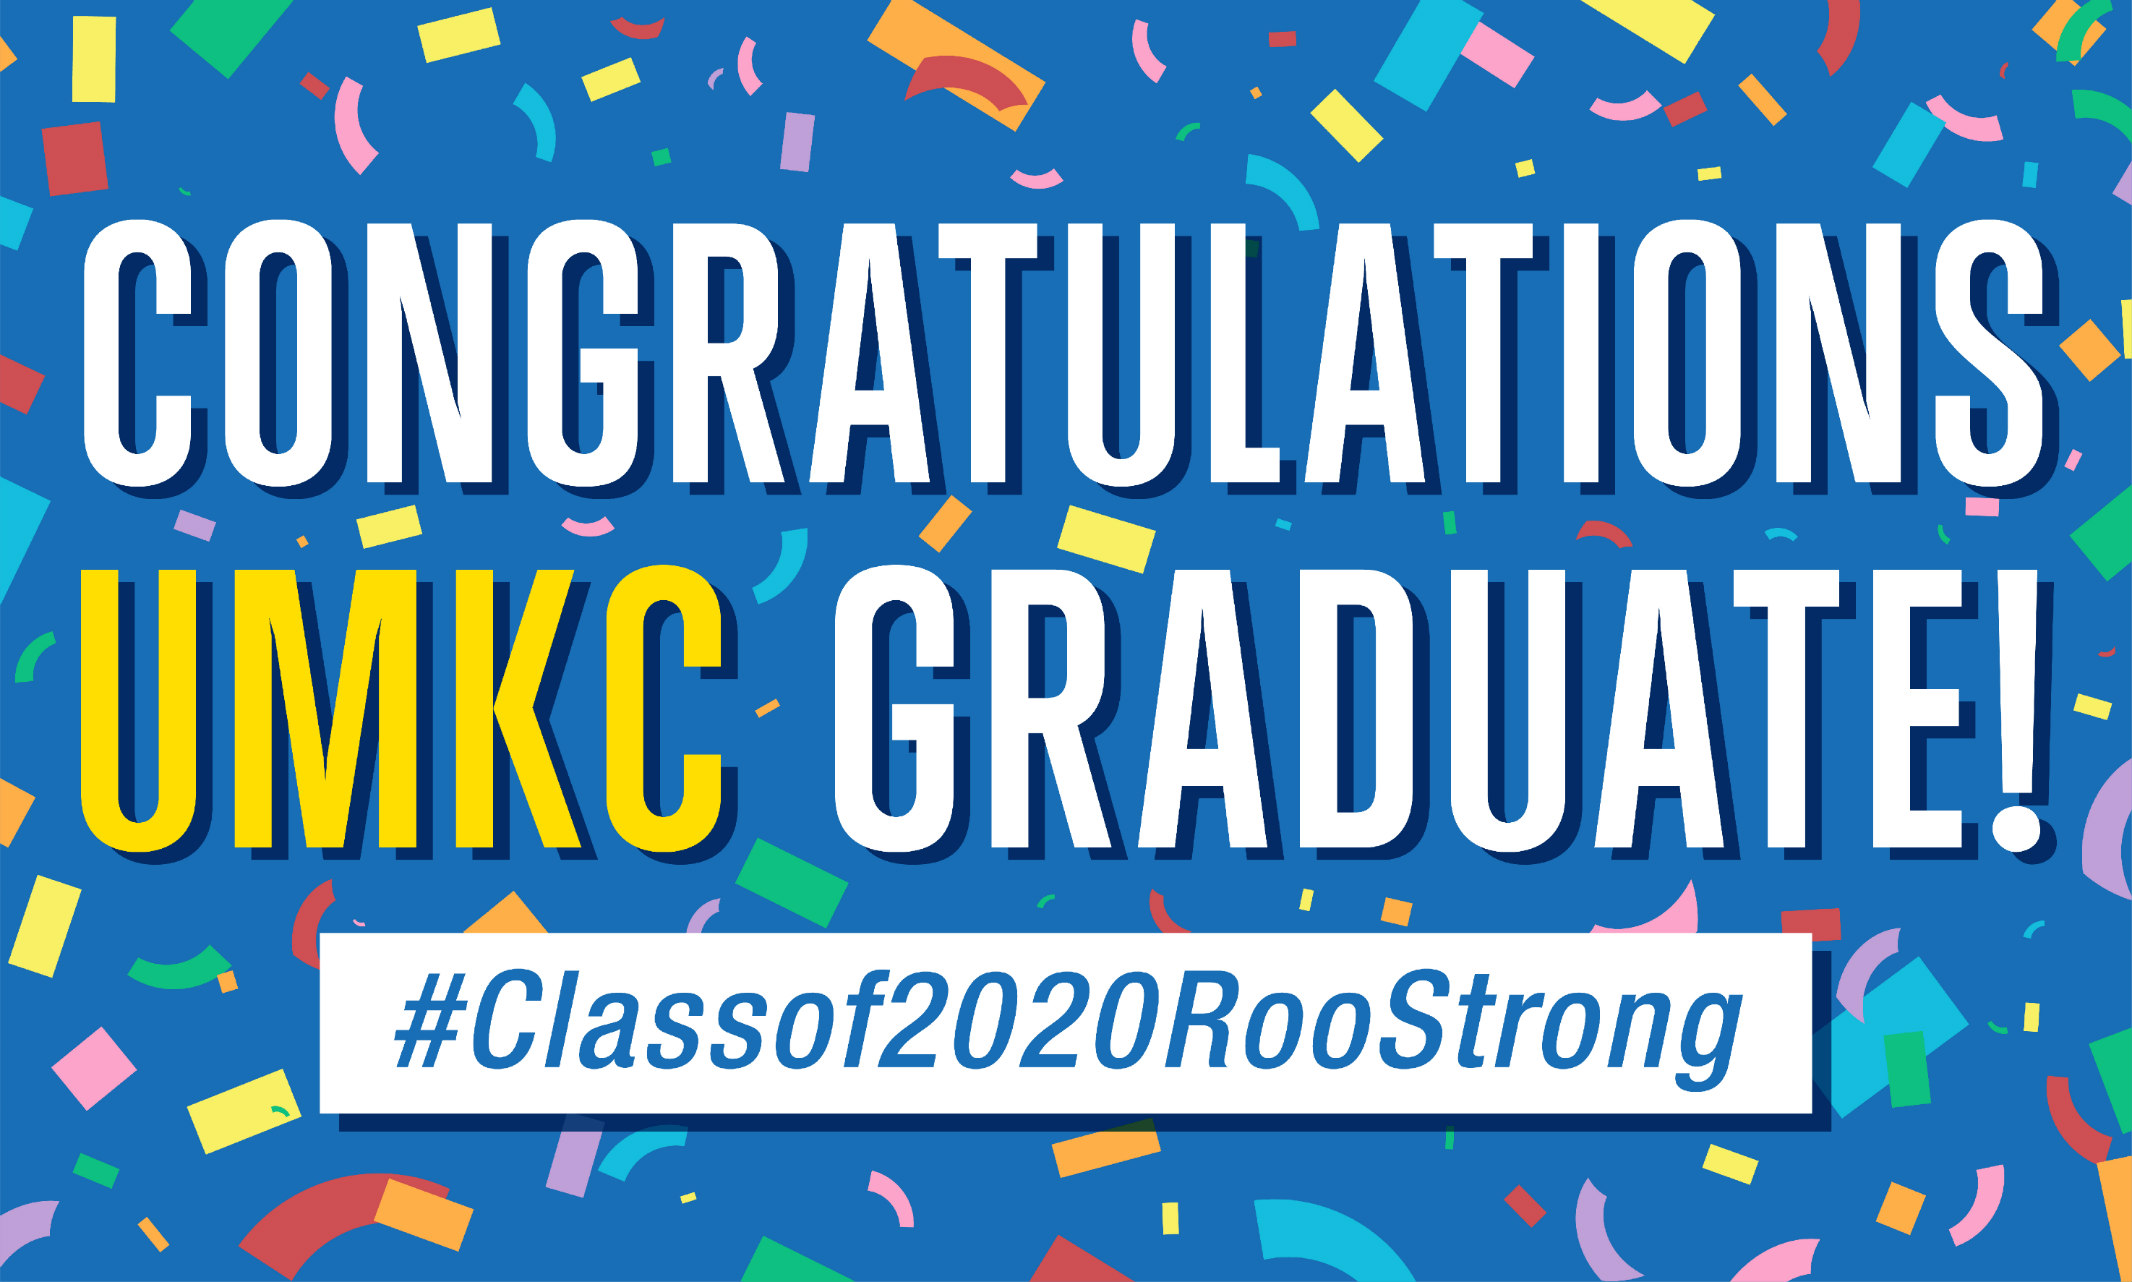 Congratulations, UMKC graduates! #Classof2020RooStrong